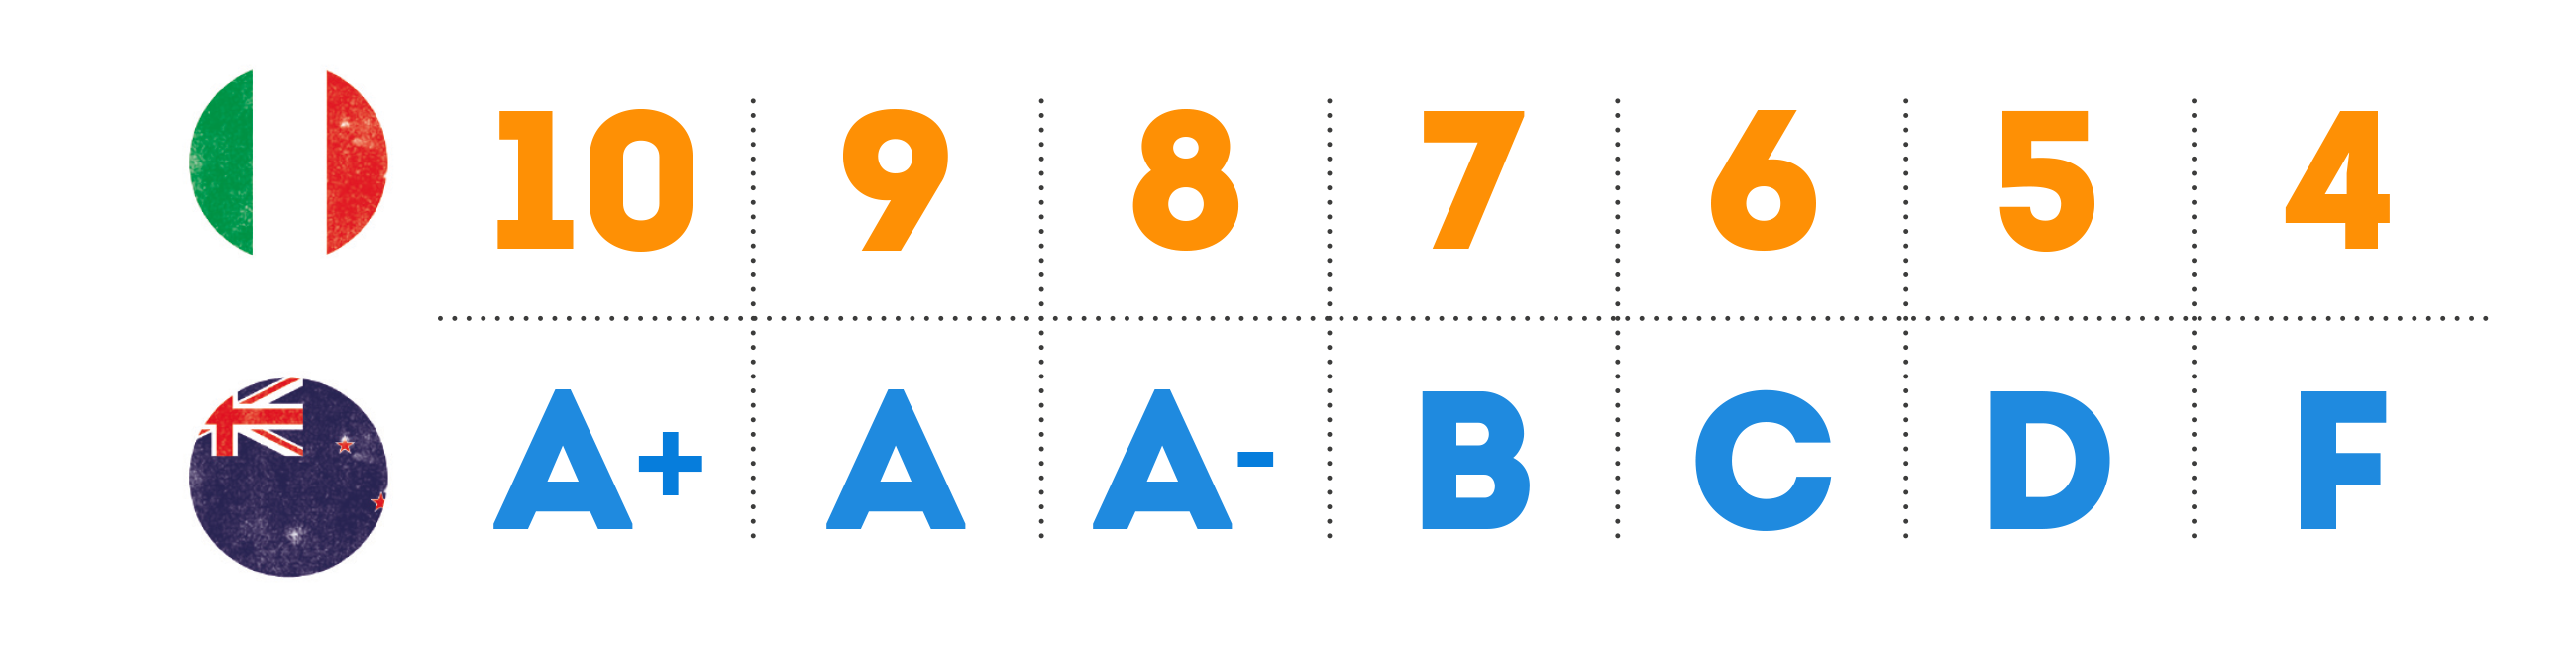 Schema in cui si equiparano i voti in numeri italiani e le votazioni in lettere del sistema scolastico della Nuova Zelanda